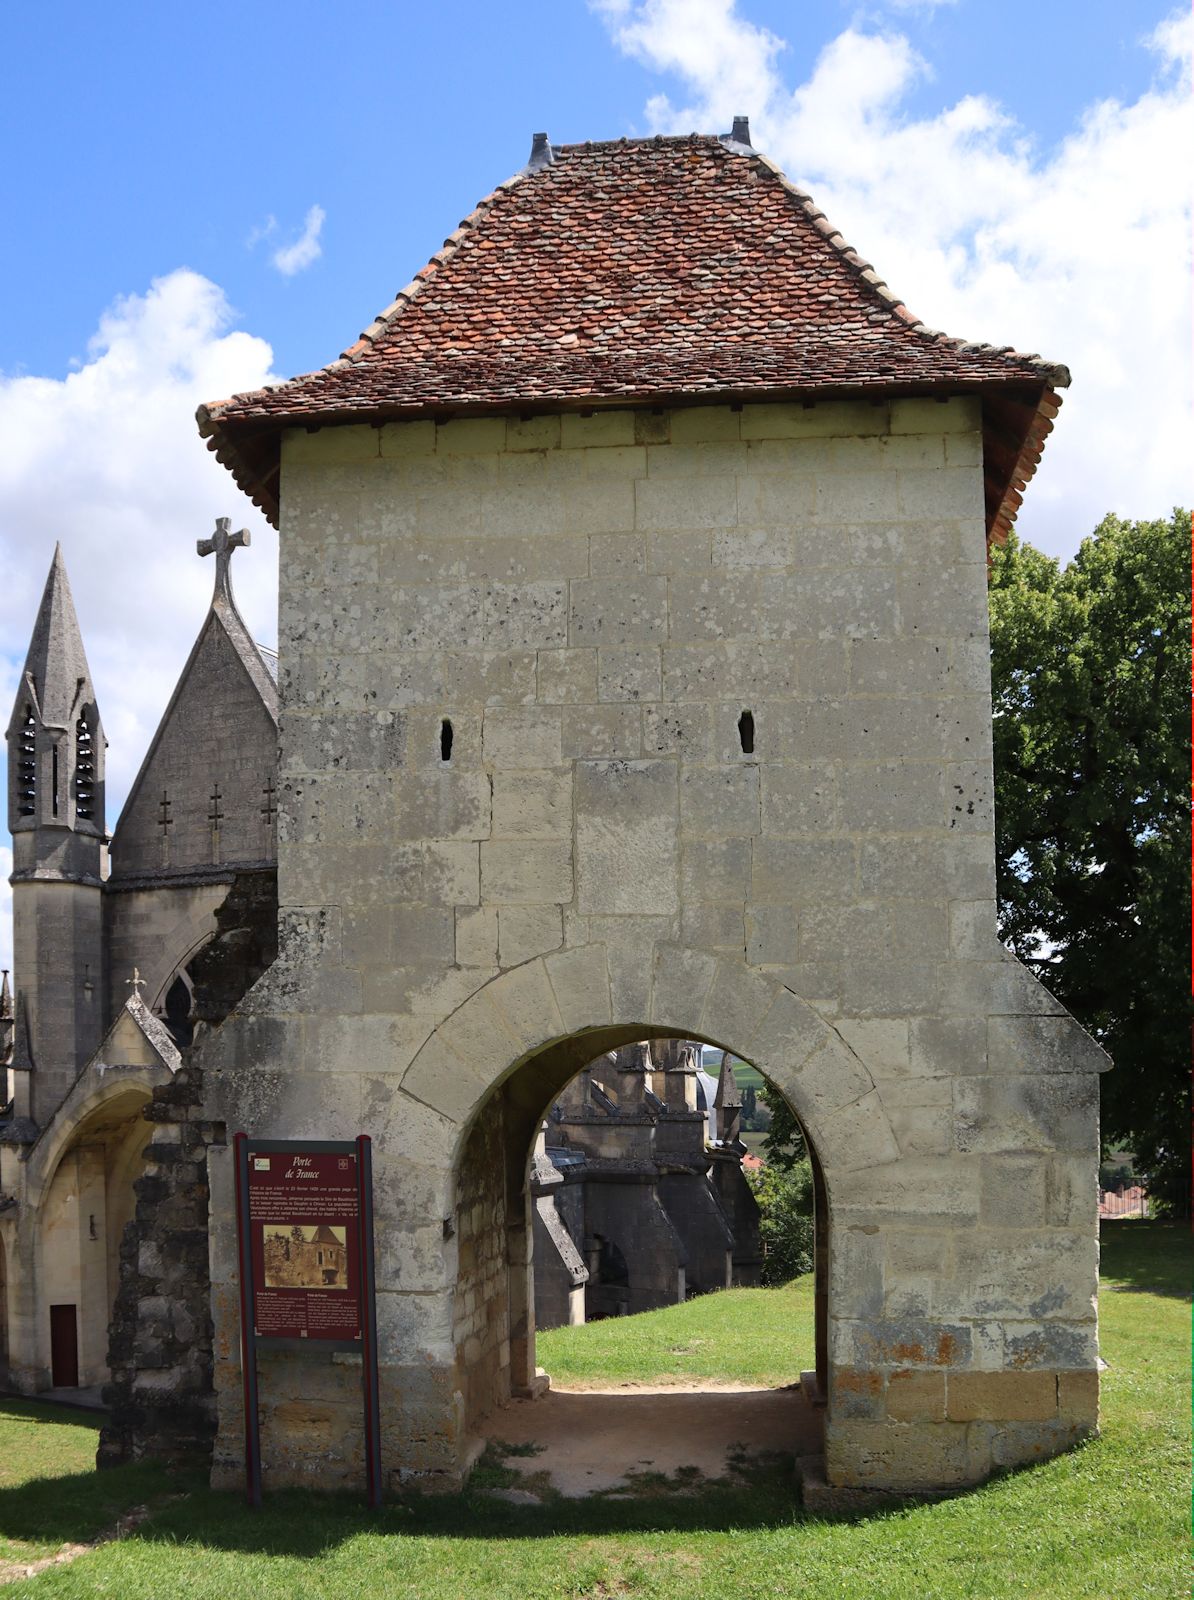 Porte de France in Vaucouleurs